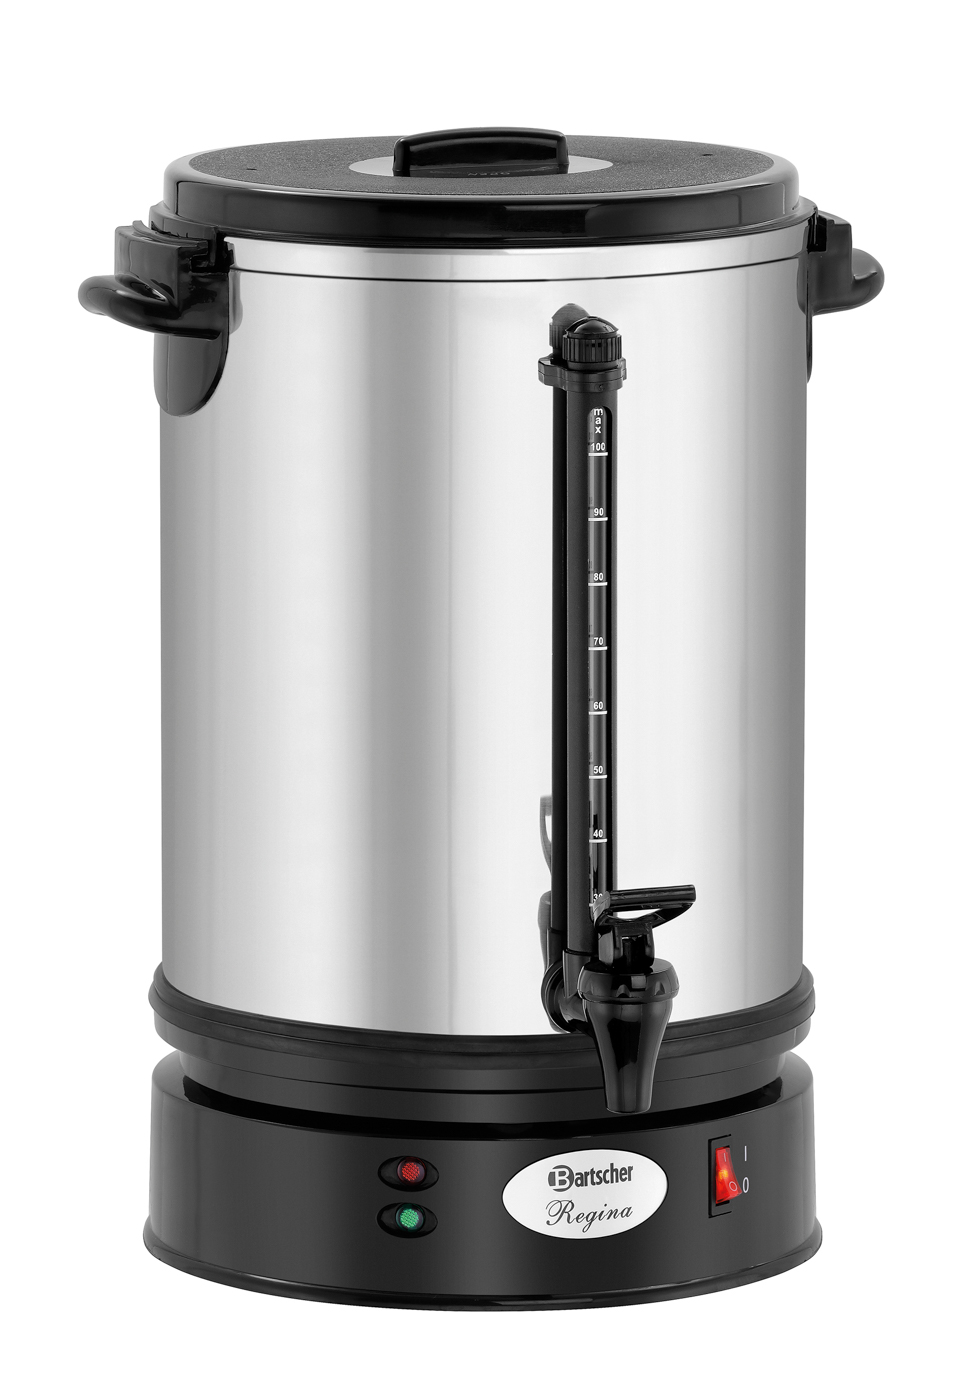 Bartscher Kaffeemaschine Regina Plus 90 | Inhalt: 15 Liter | Maße: 27 x 27 x 475 cm. Gewicht: 4,2 kg